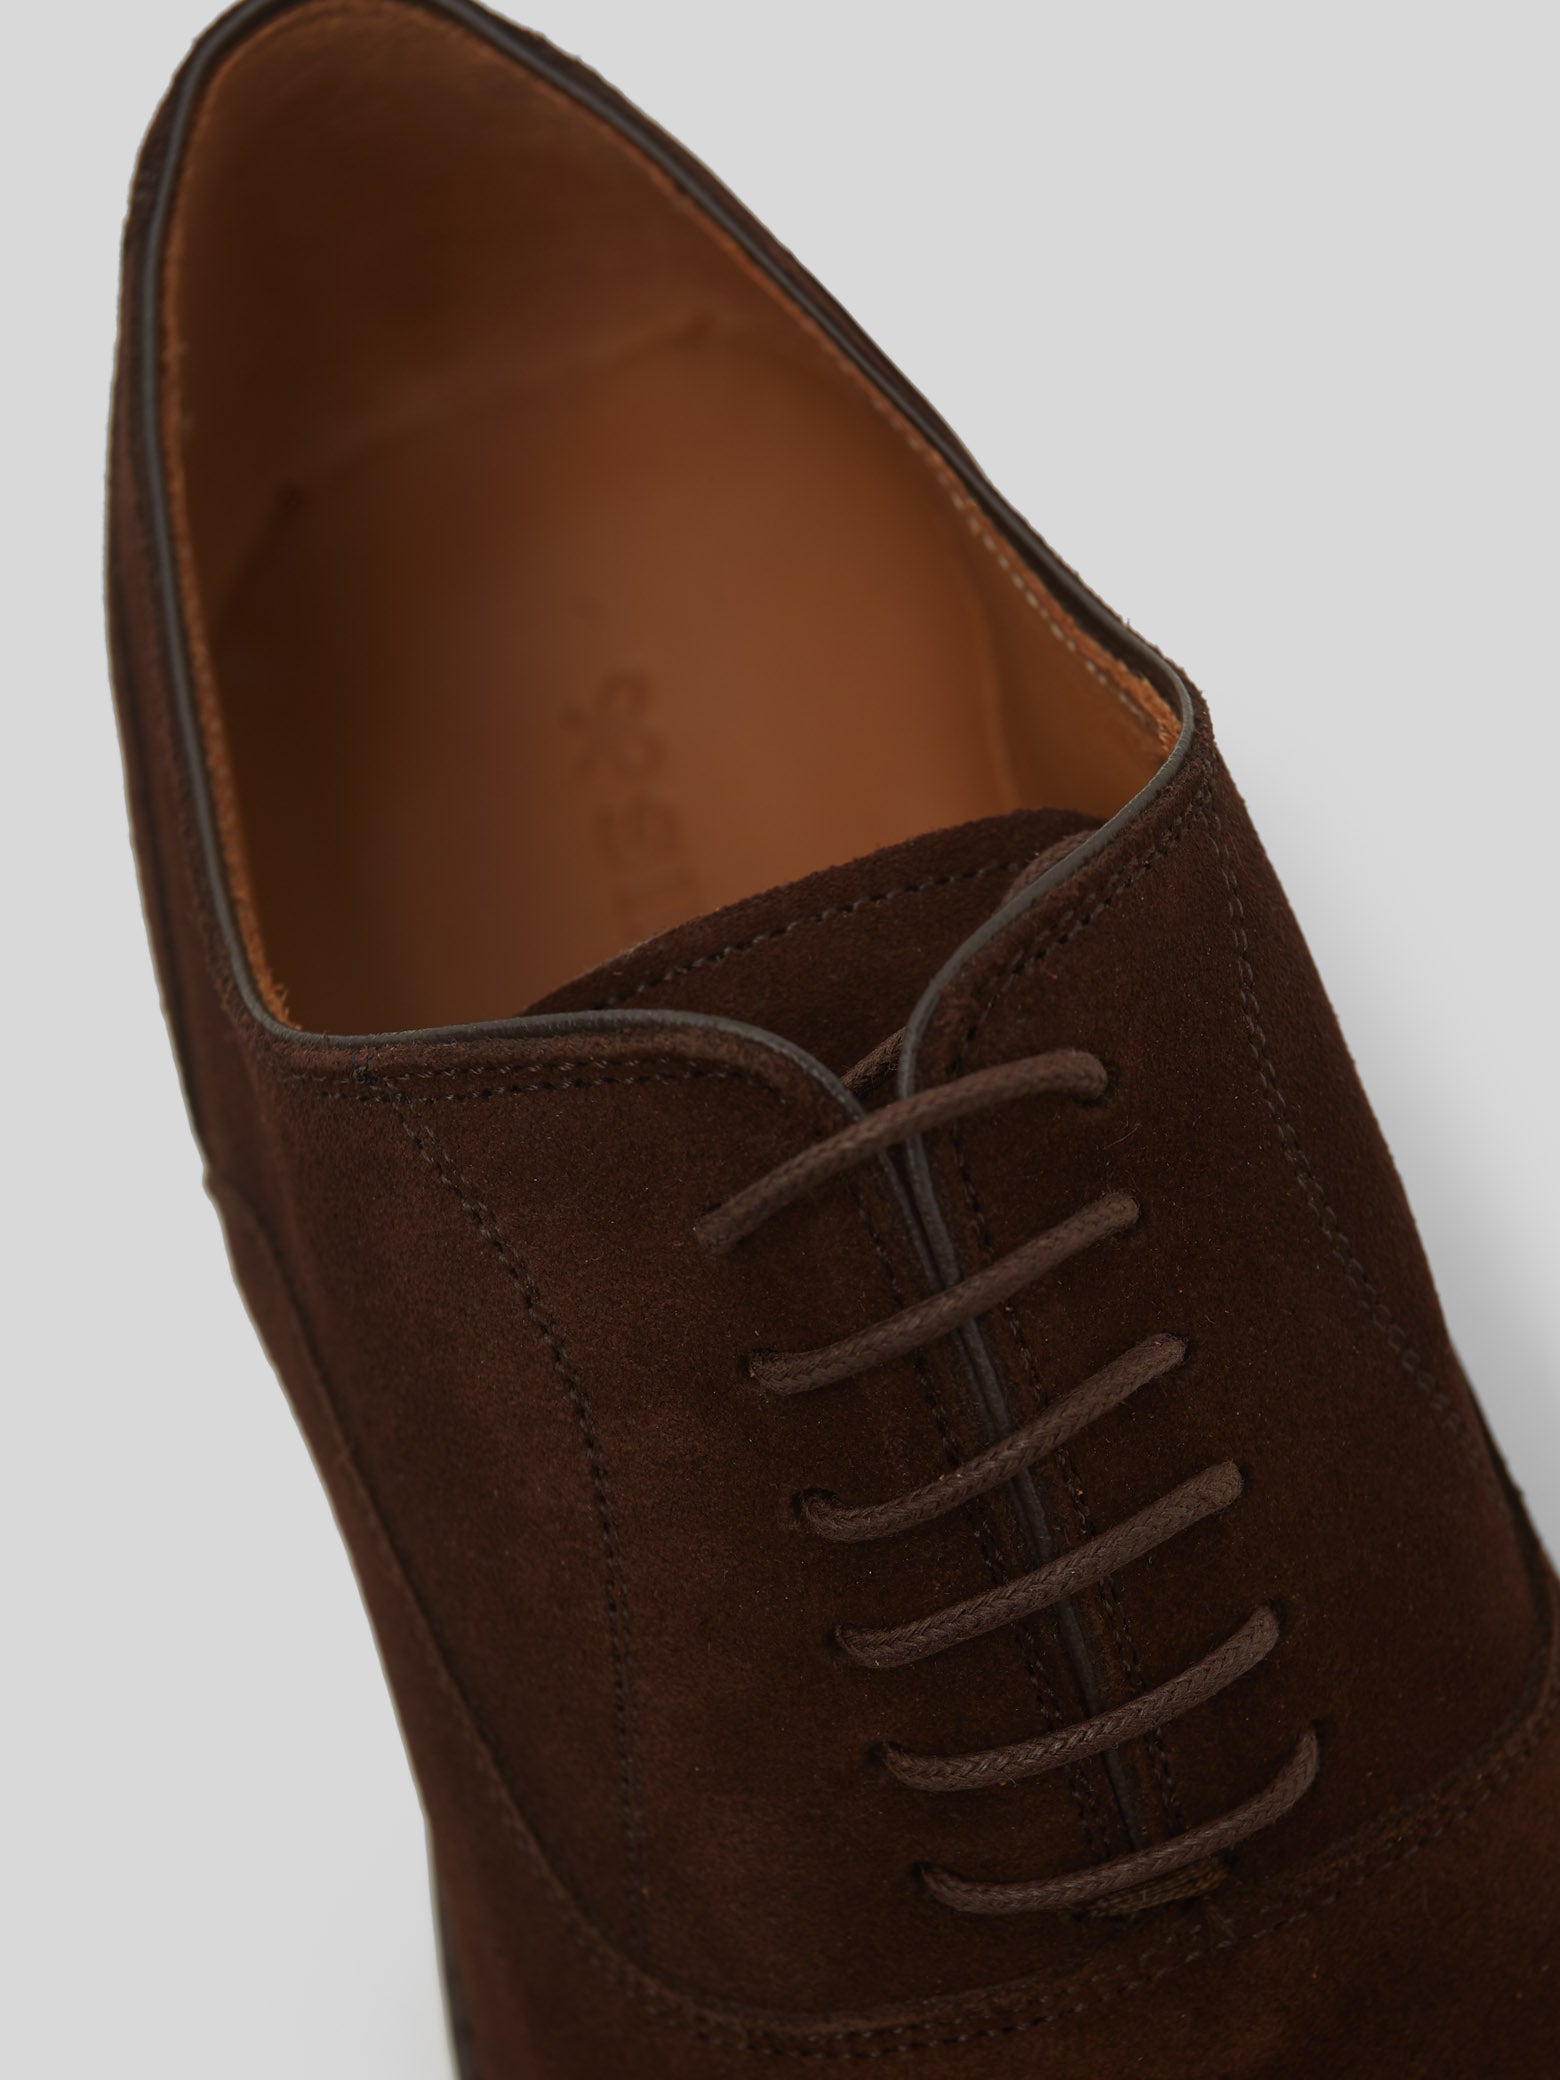 Zapato clasico ante cordones marron